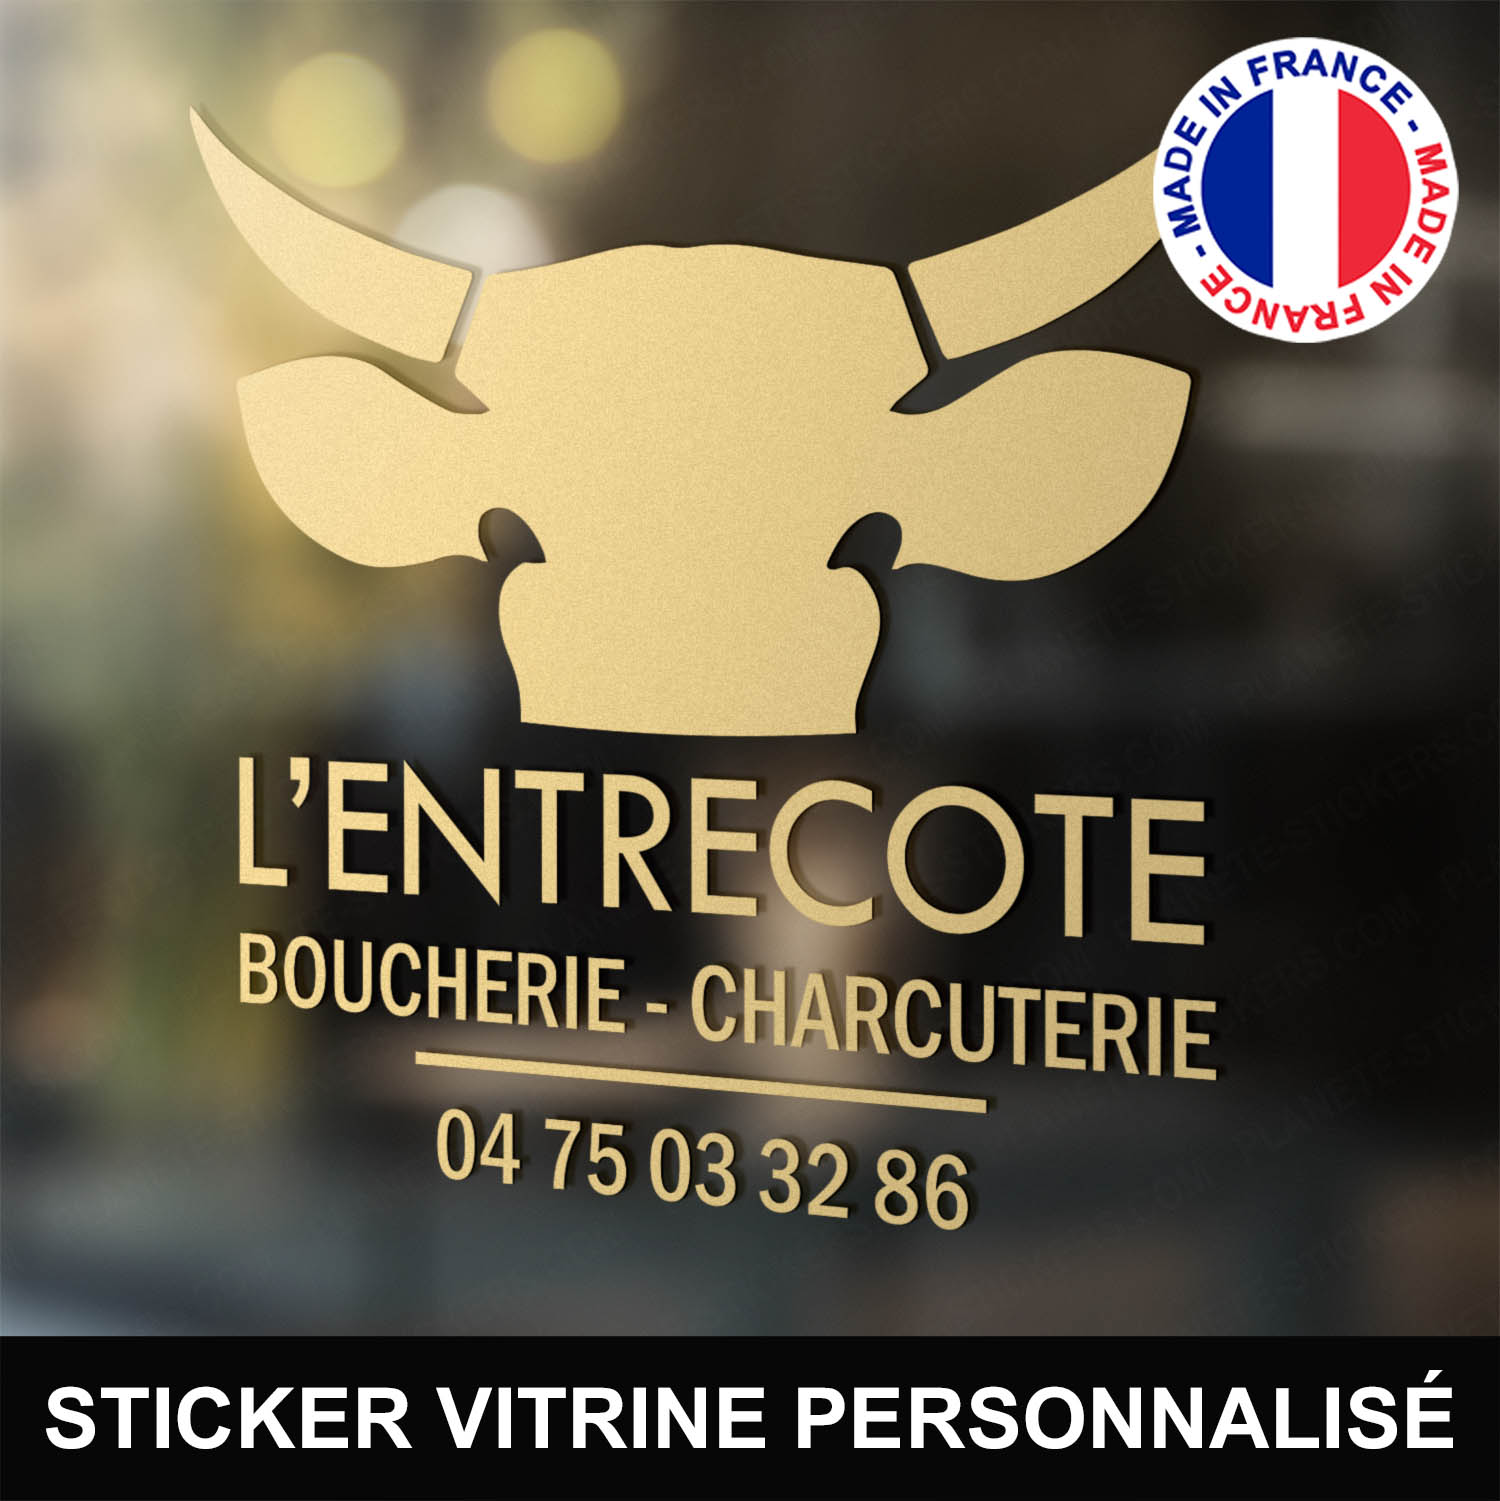 ref5boucherievitrine-stickers-boucherie-charcuterie-vitrine-sticker-personnalisé-autocollant-boutique-pro-boucher-charcutier-professionnel